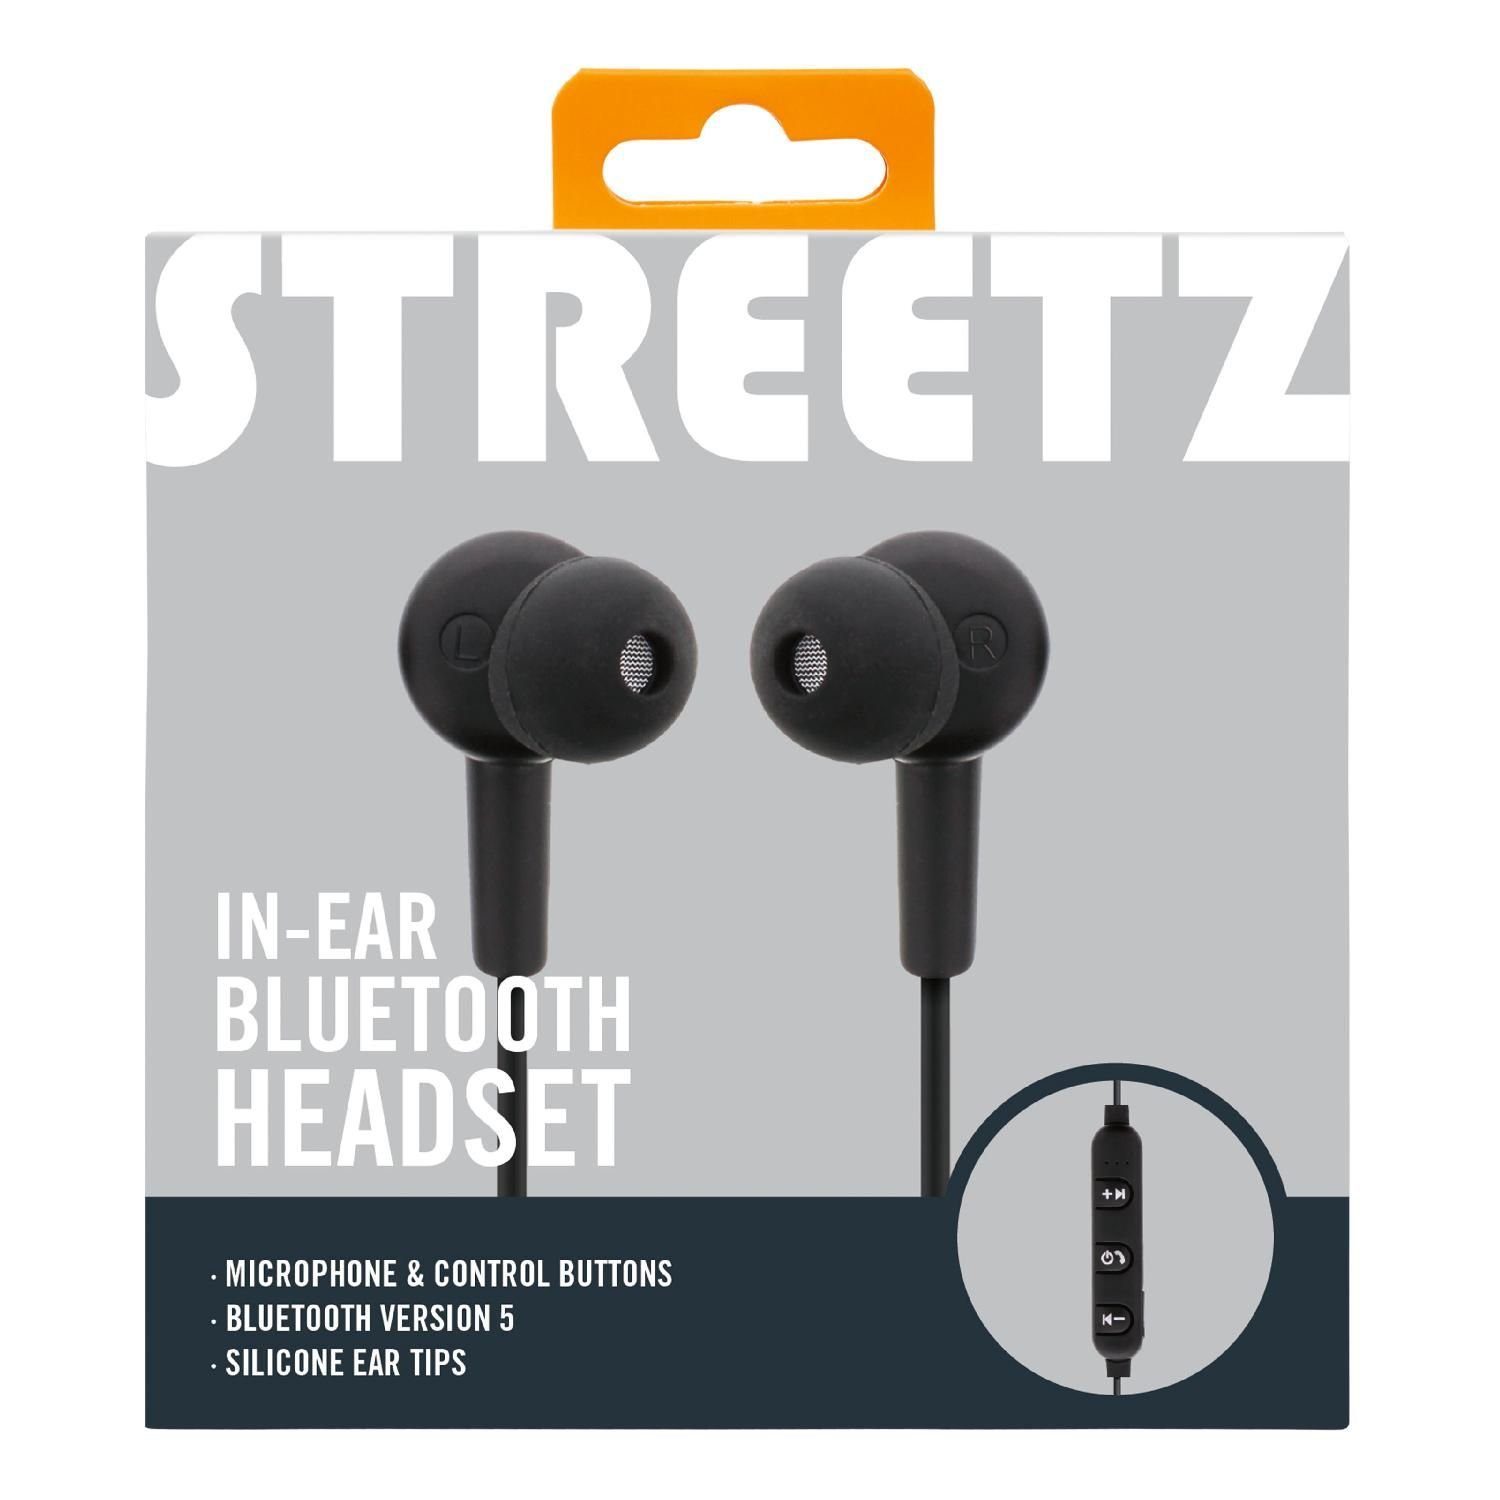 (integriertes HL-BT301 Jahre Std Kopfhörer In-Ear Bluetooth inkl. Mikrofon, 3 STREETZ In-Ear-Kopfhörer 5 bis 10m Herstellergarantie) Bluetooth, zu Bluetooth